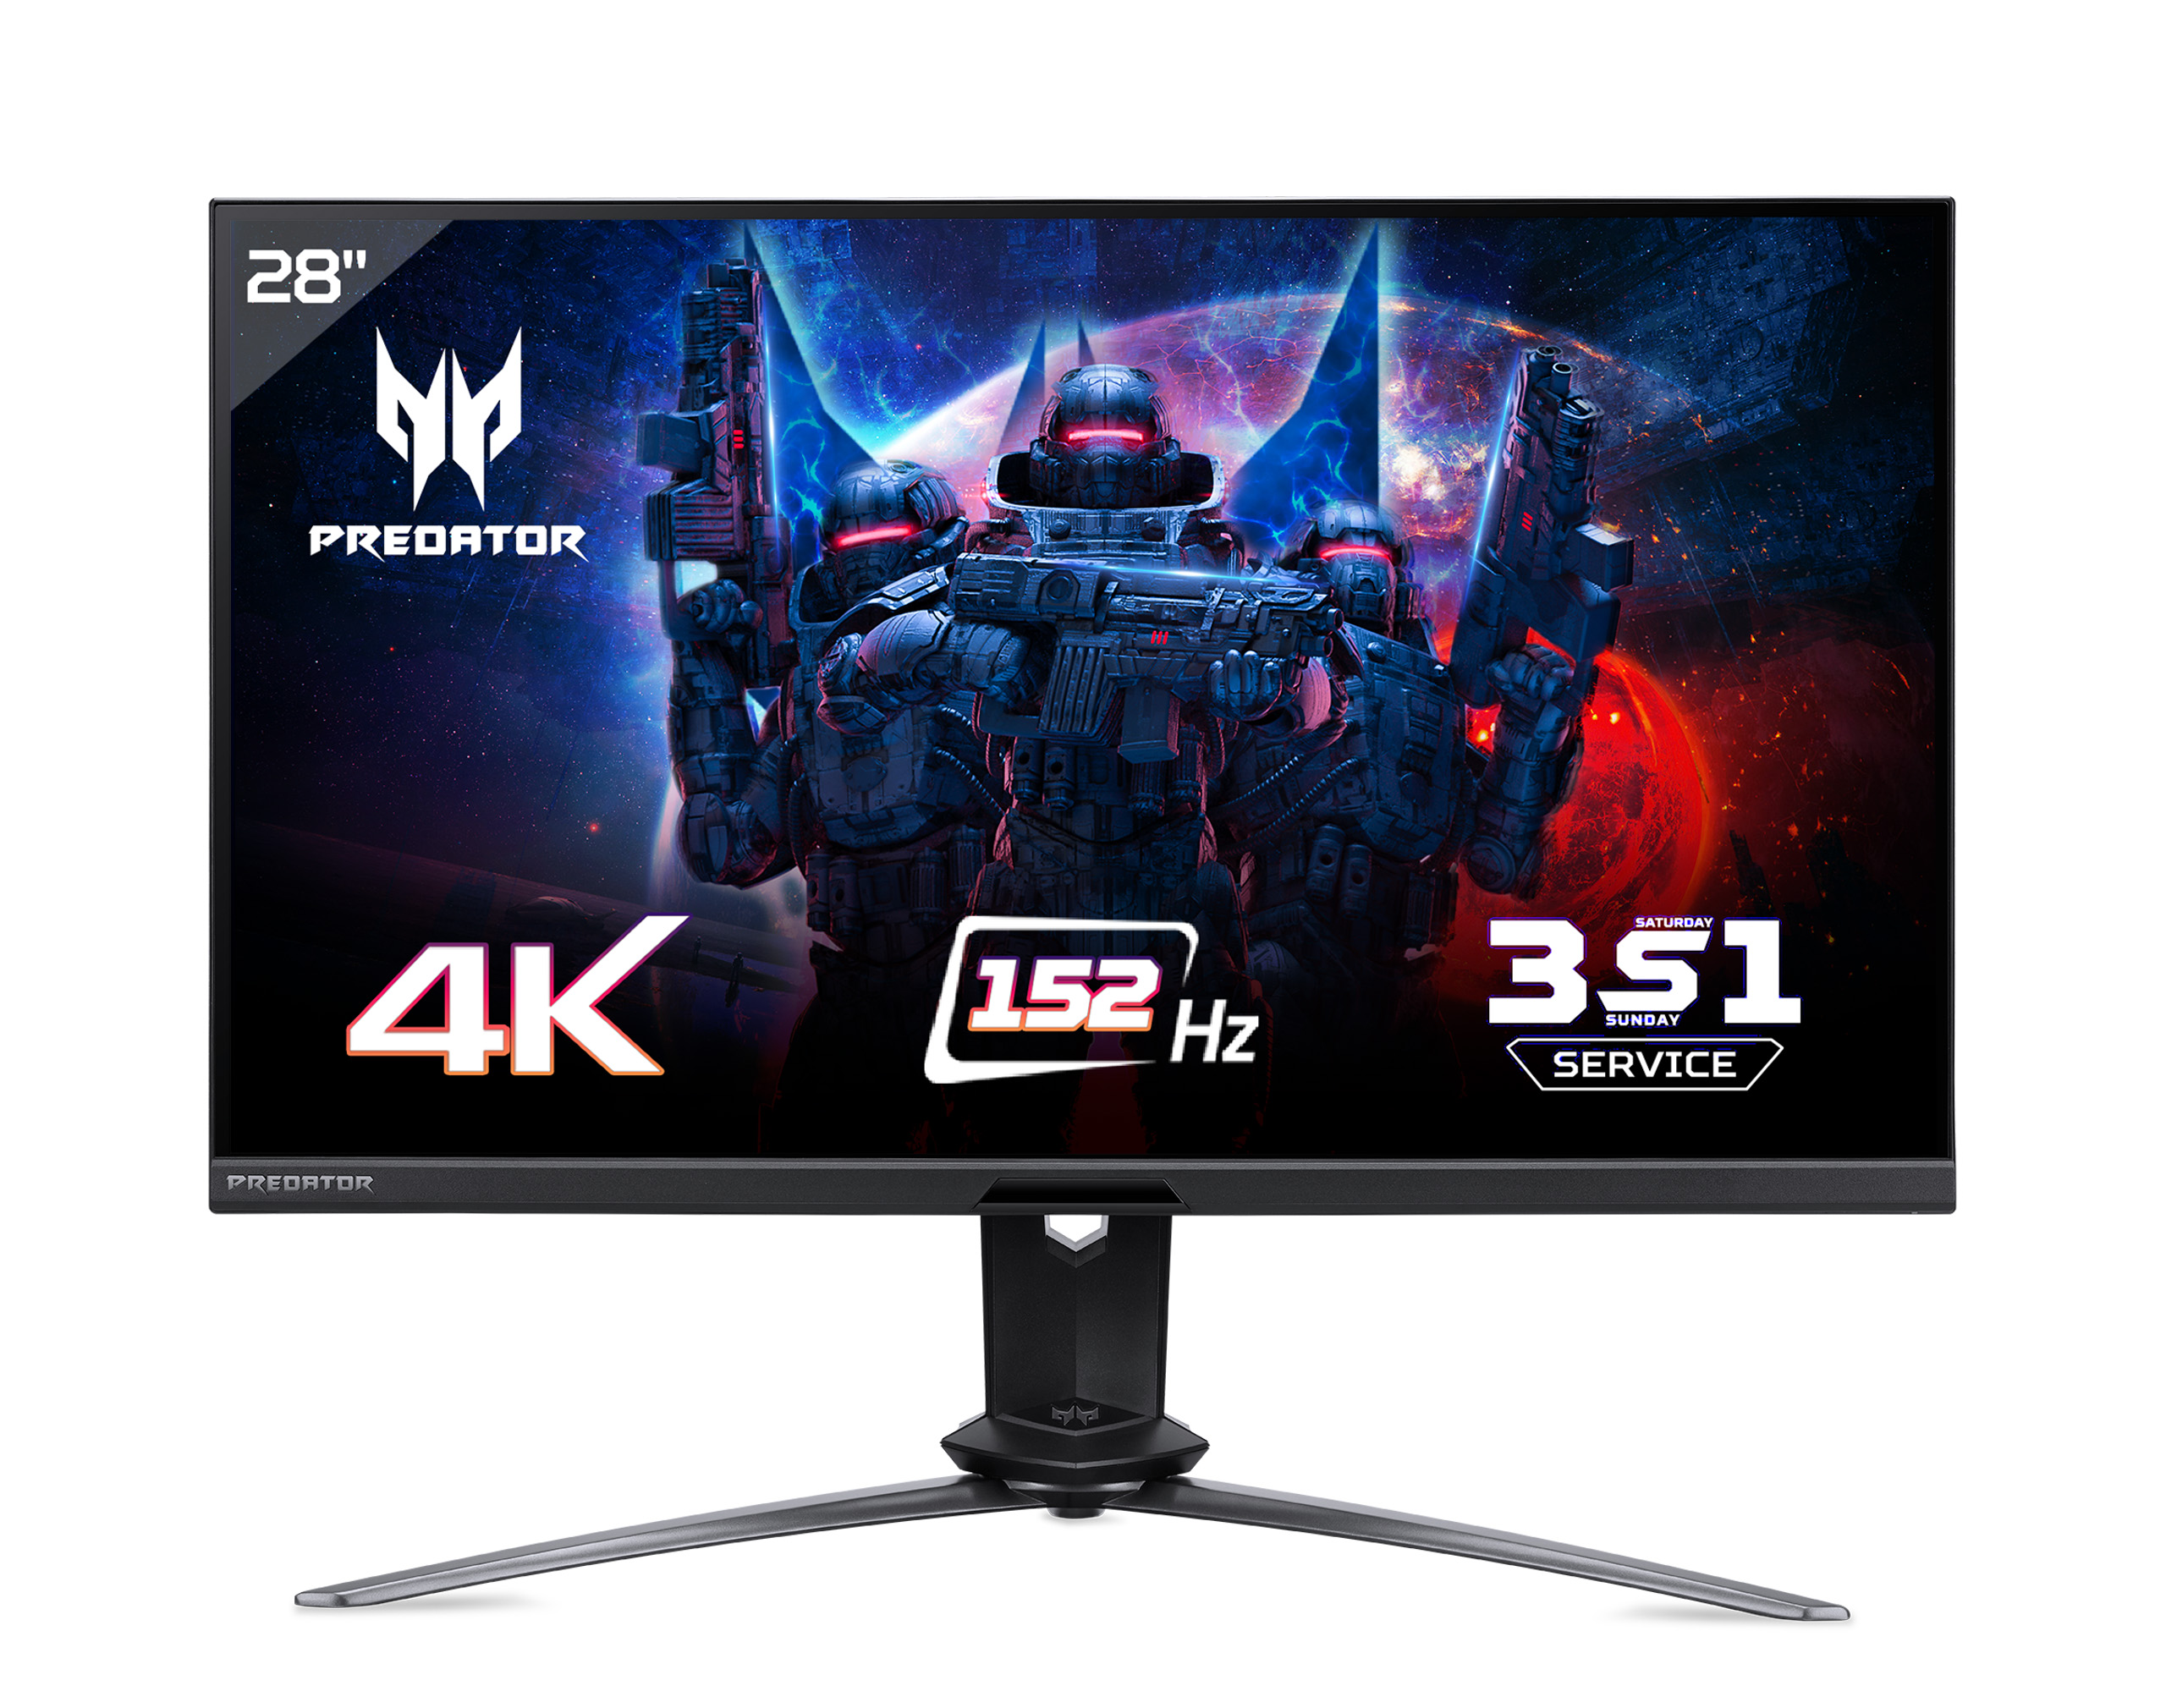 Acer giới thiệu màn hình Predator X28 dành cho game thủ hardcore, giá 59.99 triệu đồng